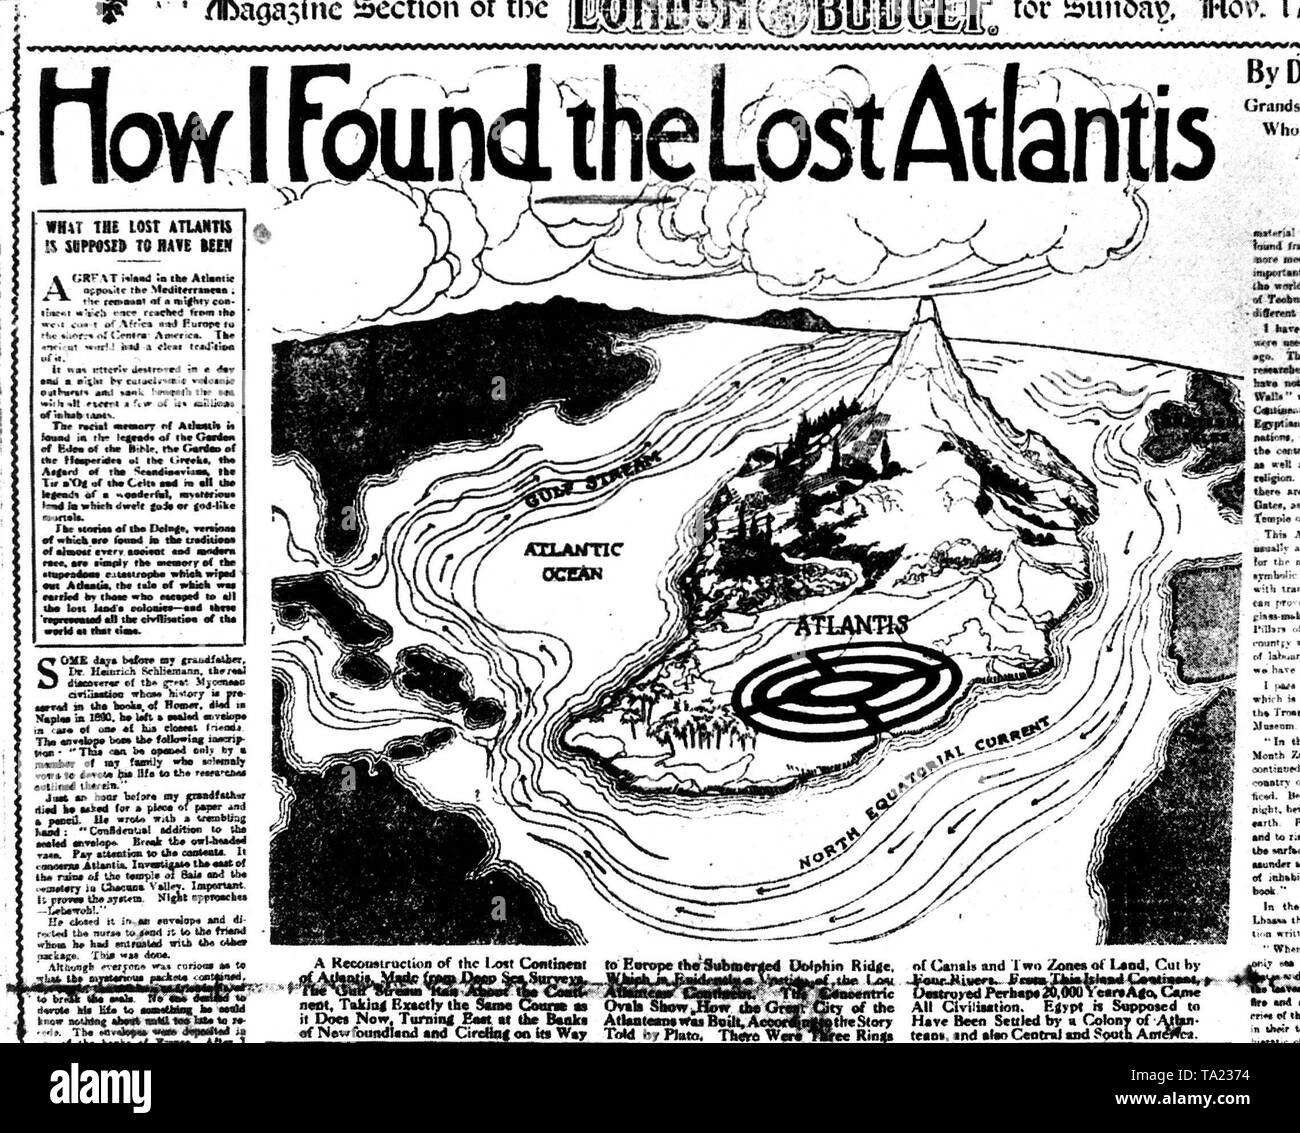 Atlantis, ilustración fantástica de la isla legendaria que supuestamente hundido en el Océano Atlántico, en una revista de Londres en 1931. La realidad histórica y la ubicación de la Atlántida es controvertido. Foto de stock